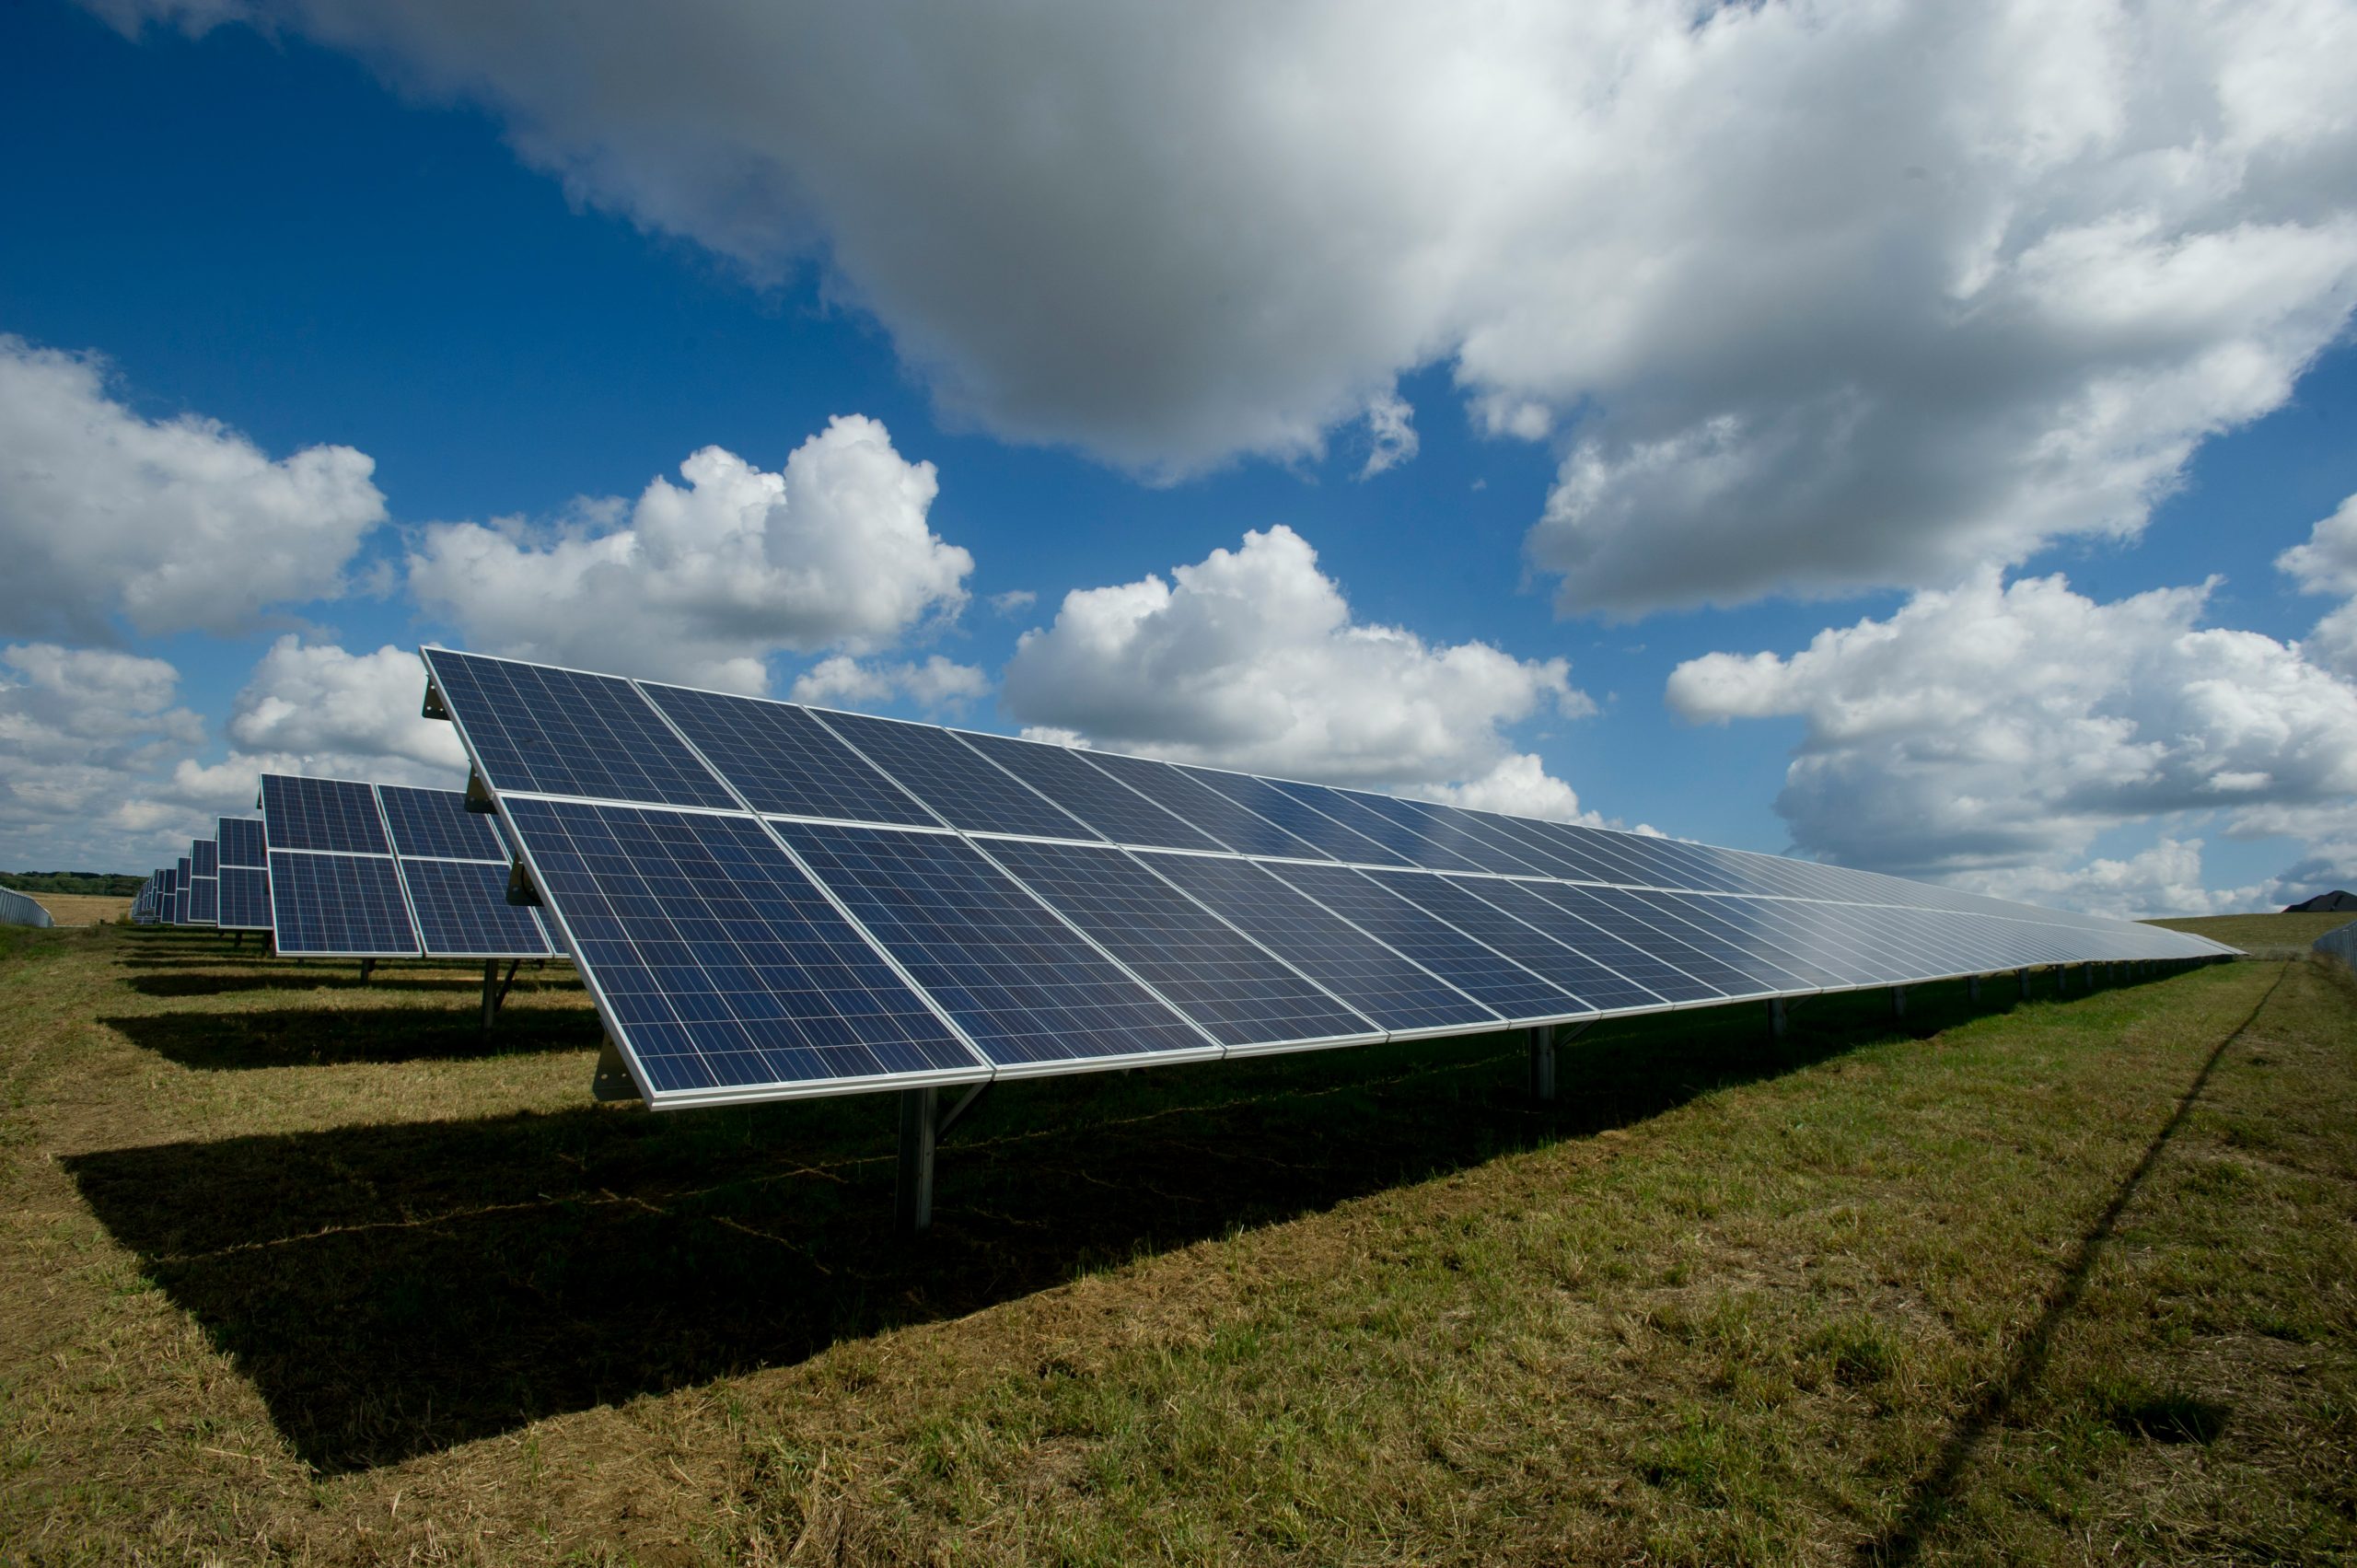 Solarni paneli: I dalje vodeći izvor obnovljive energije